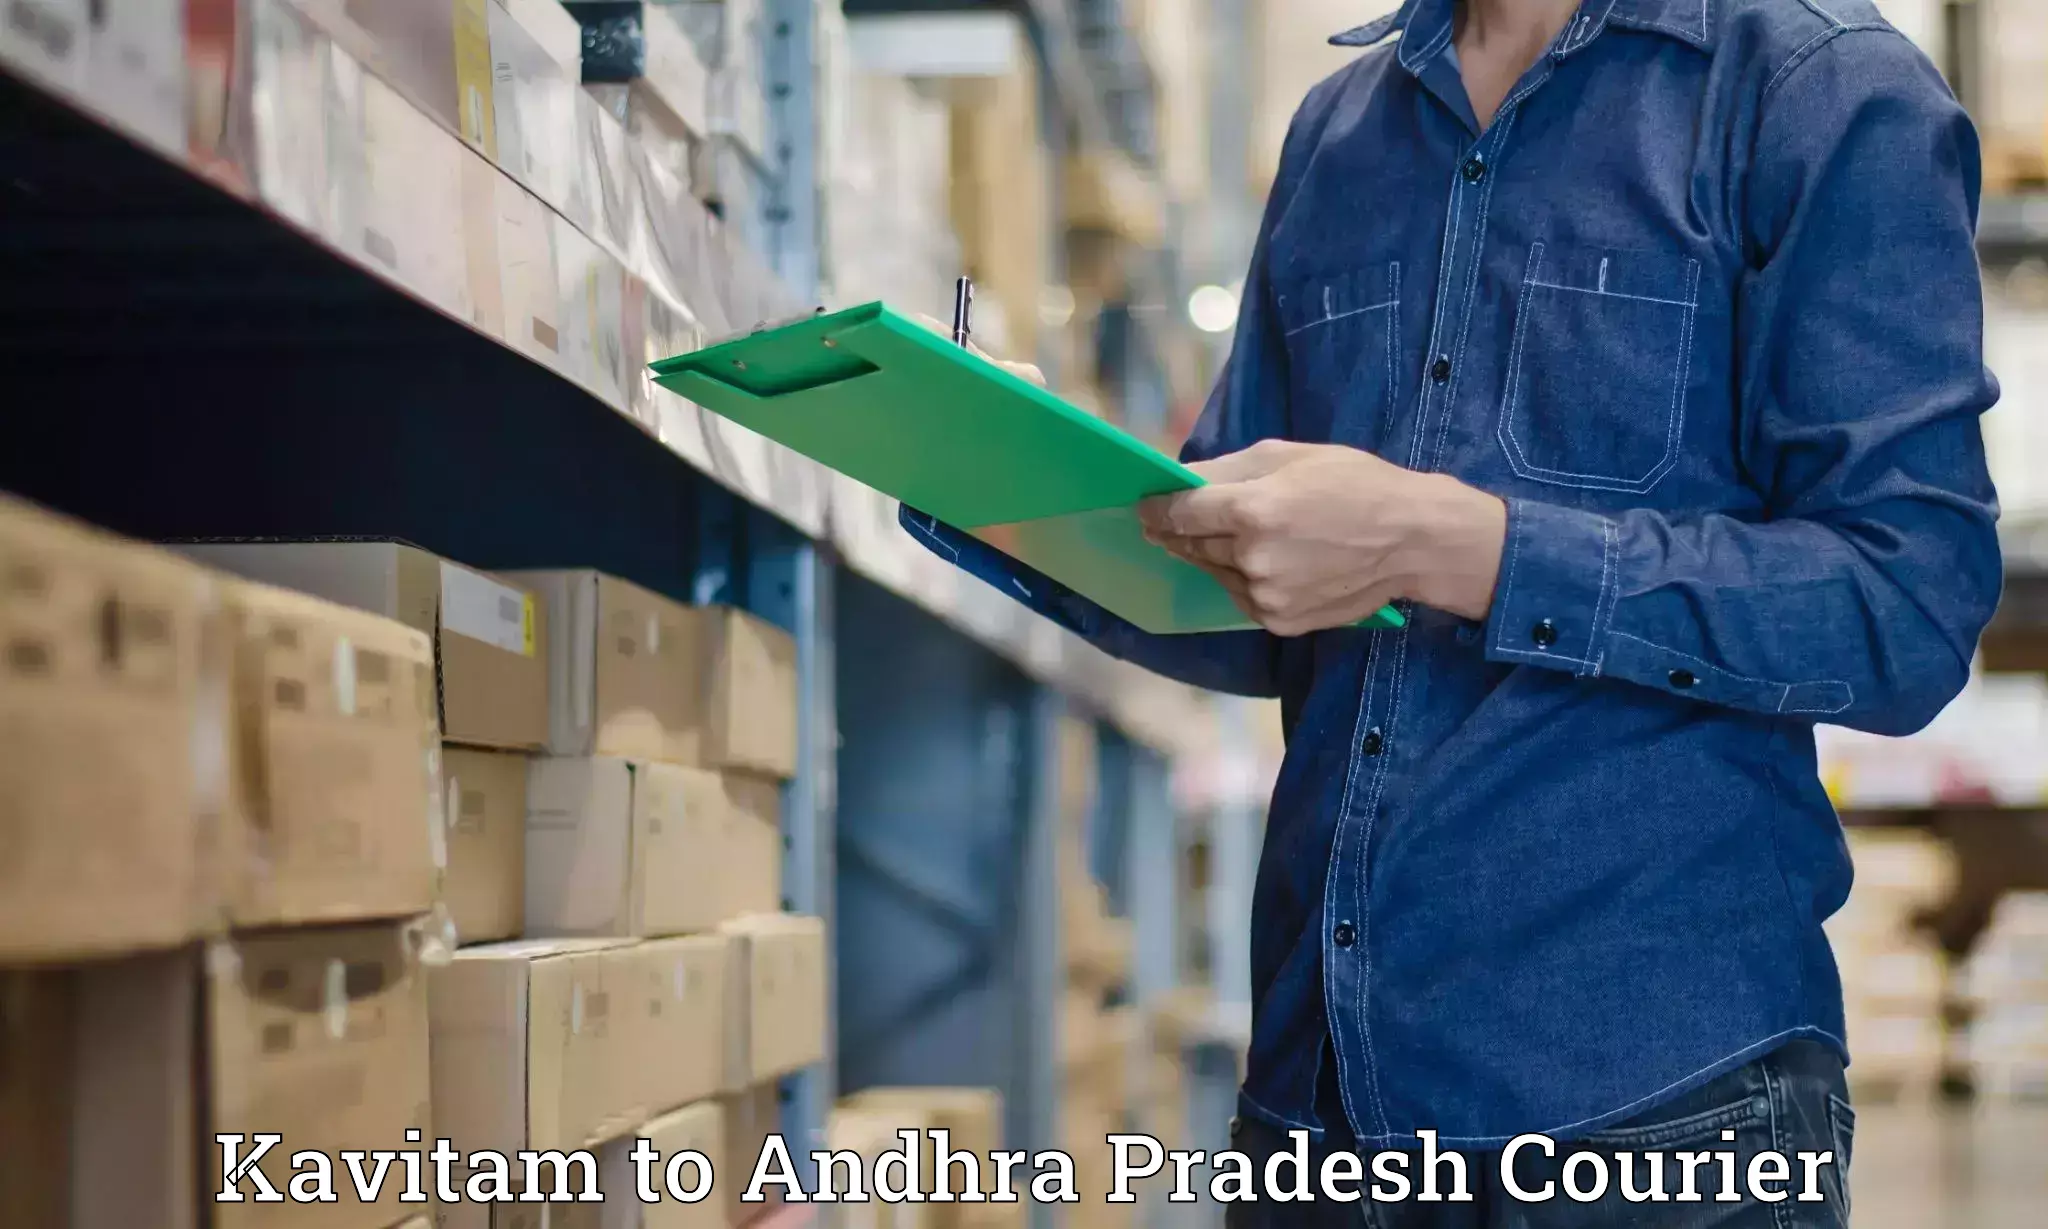 Specialized shipment handling Kavitam to Tripuranthakam